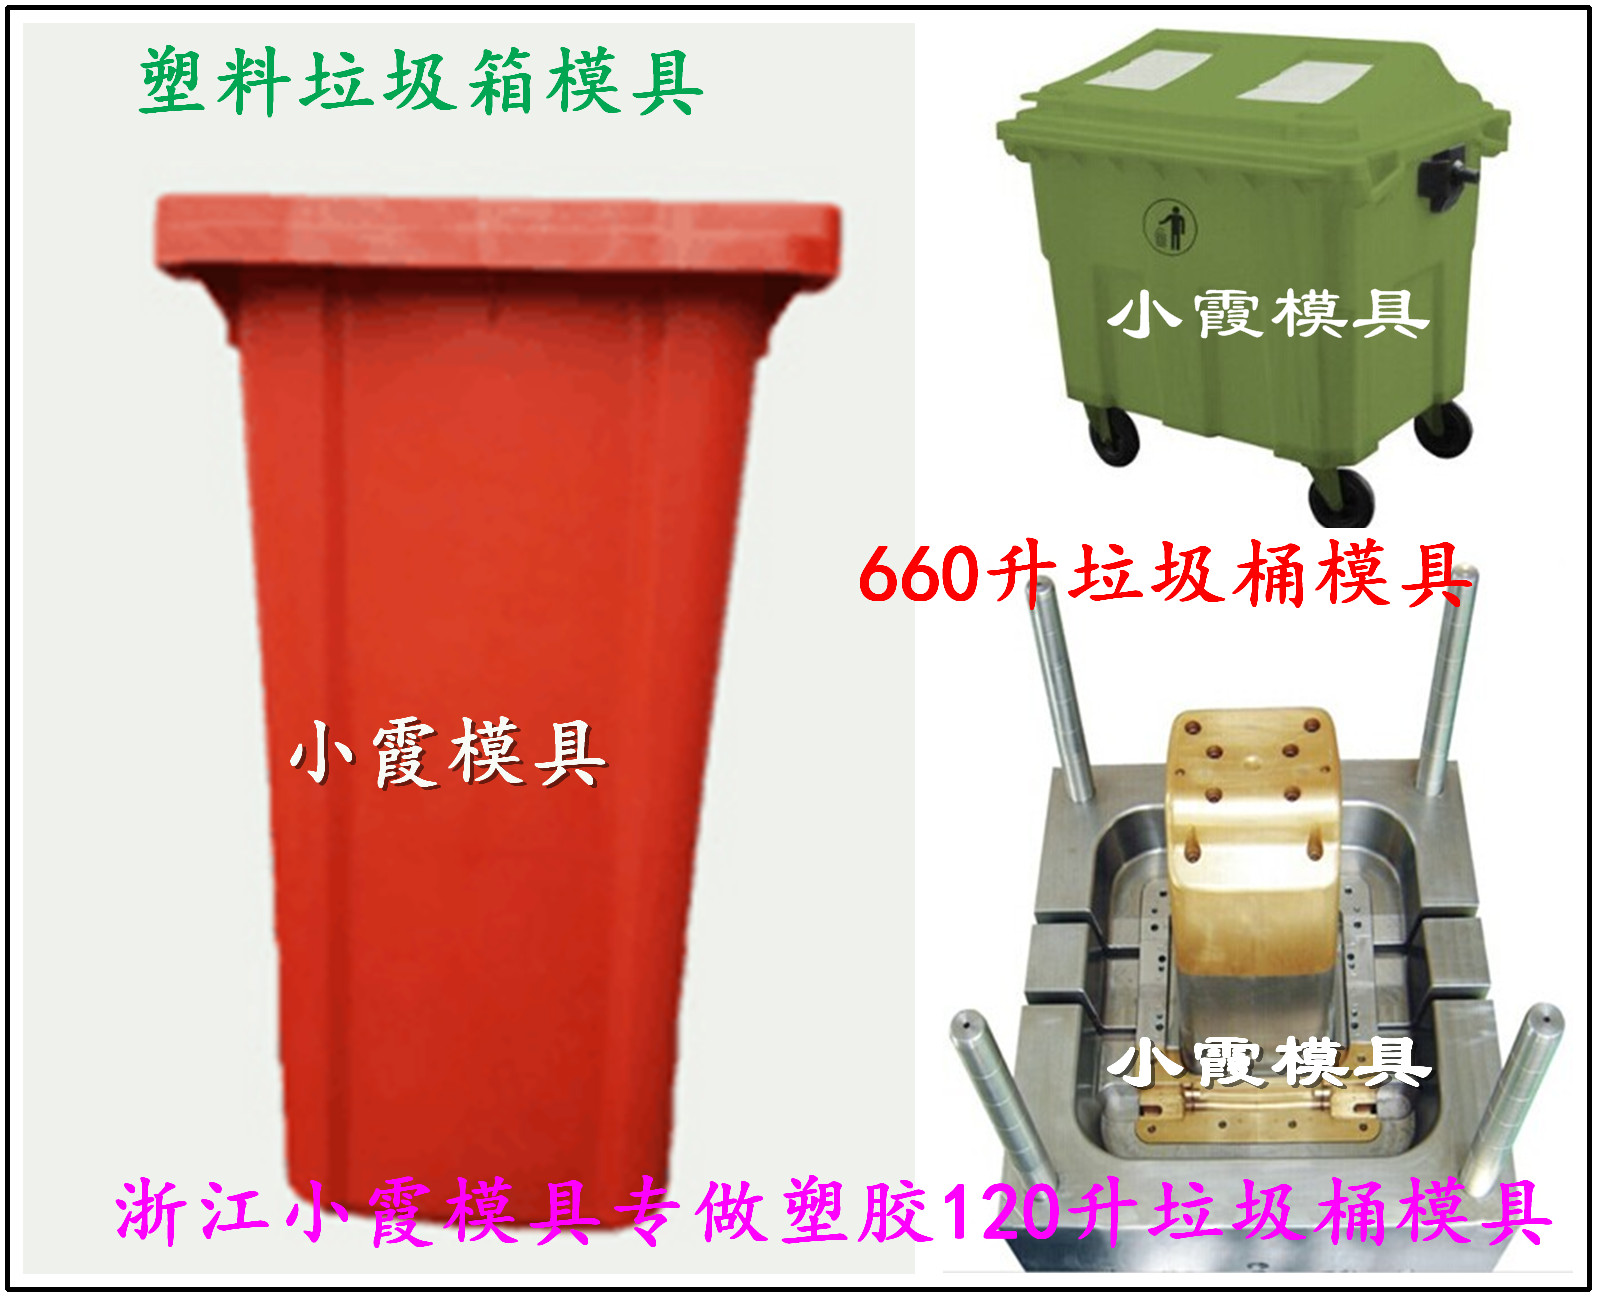 台州市450L挂车工业垃圾车模具厂家一套450L挂车工业垃圾车模具|360L挂车工业垃圾车模具生产厂家